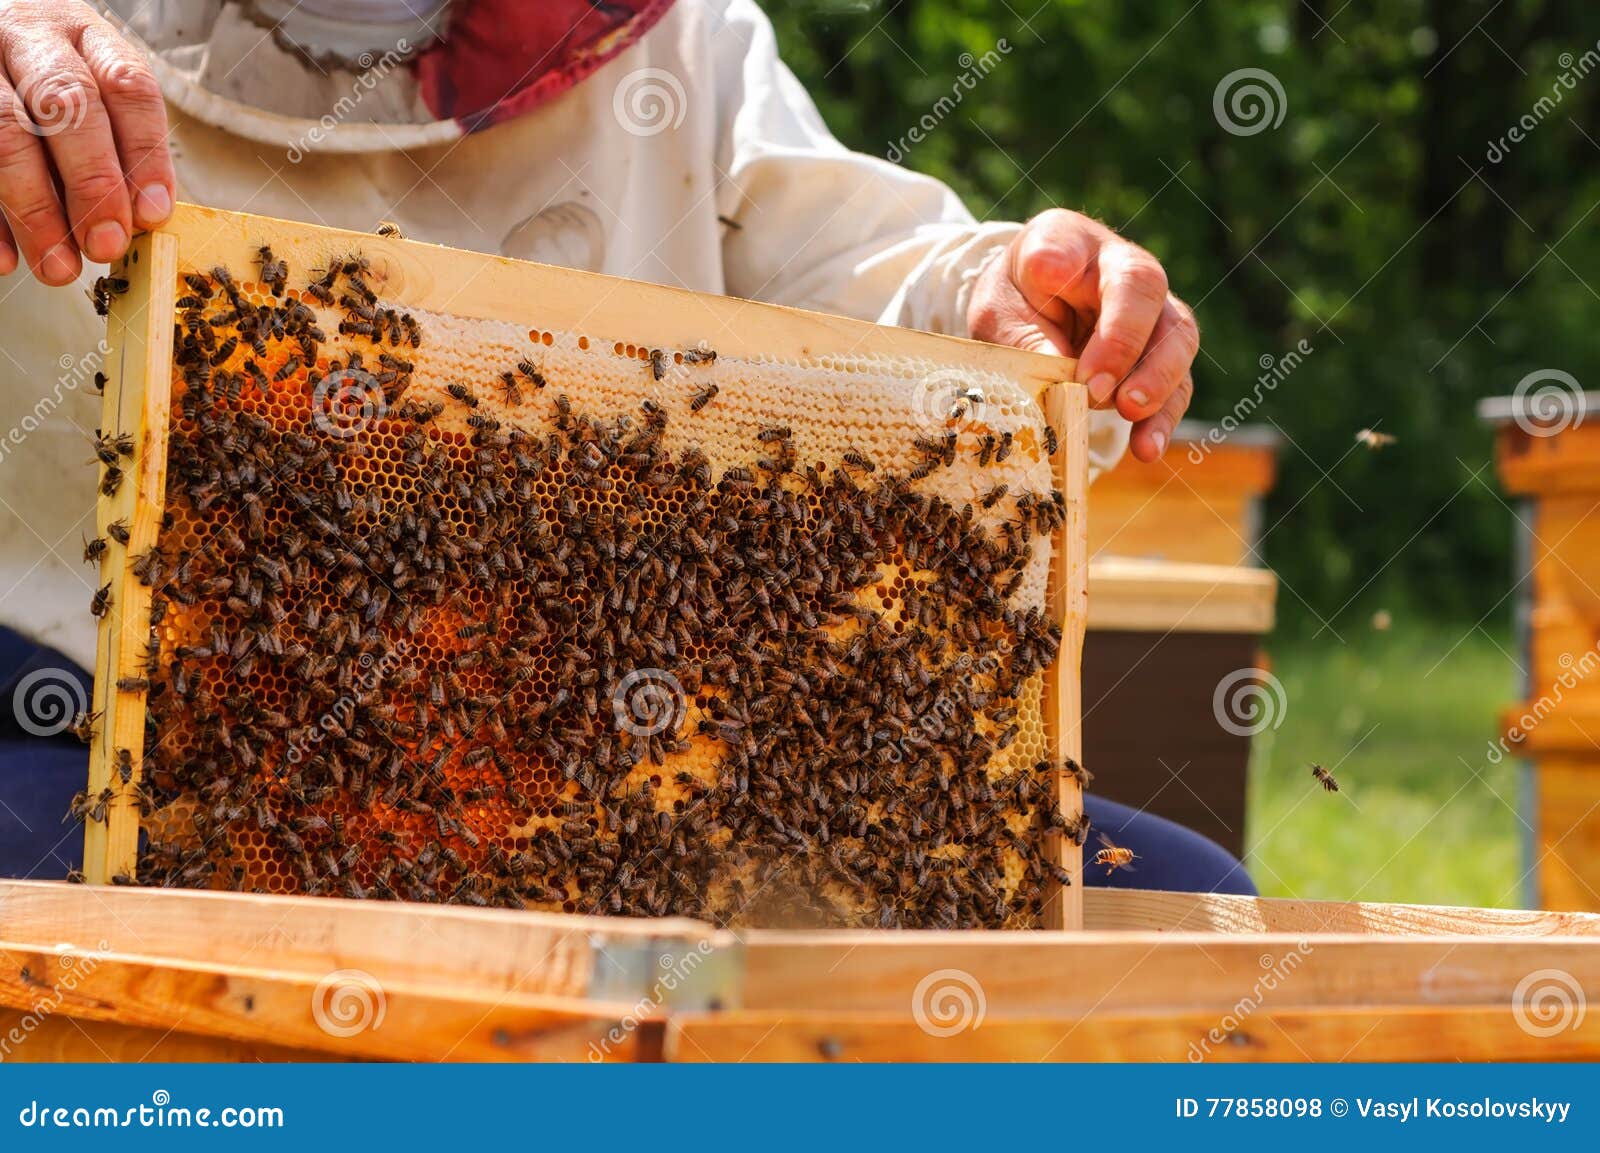 Как достают соты. Пасечник с сотами. Пчеловод держит соты. Холдинг рамку пчел. Пчеловод достает соты из улья.